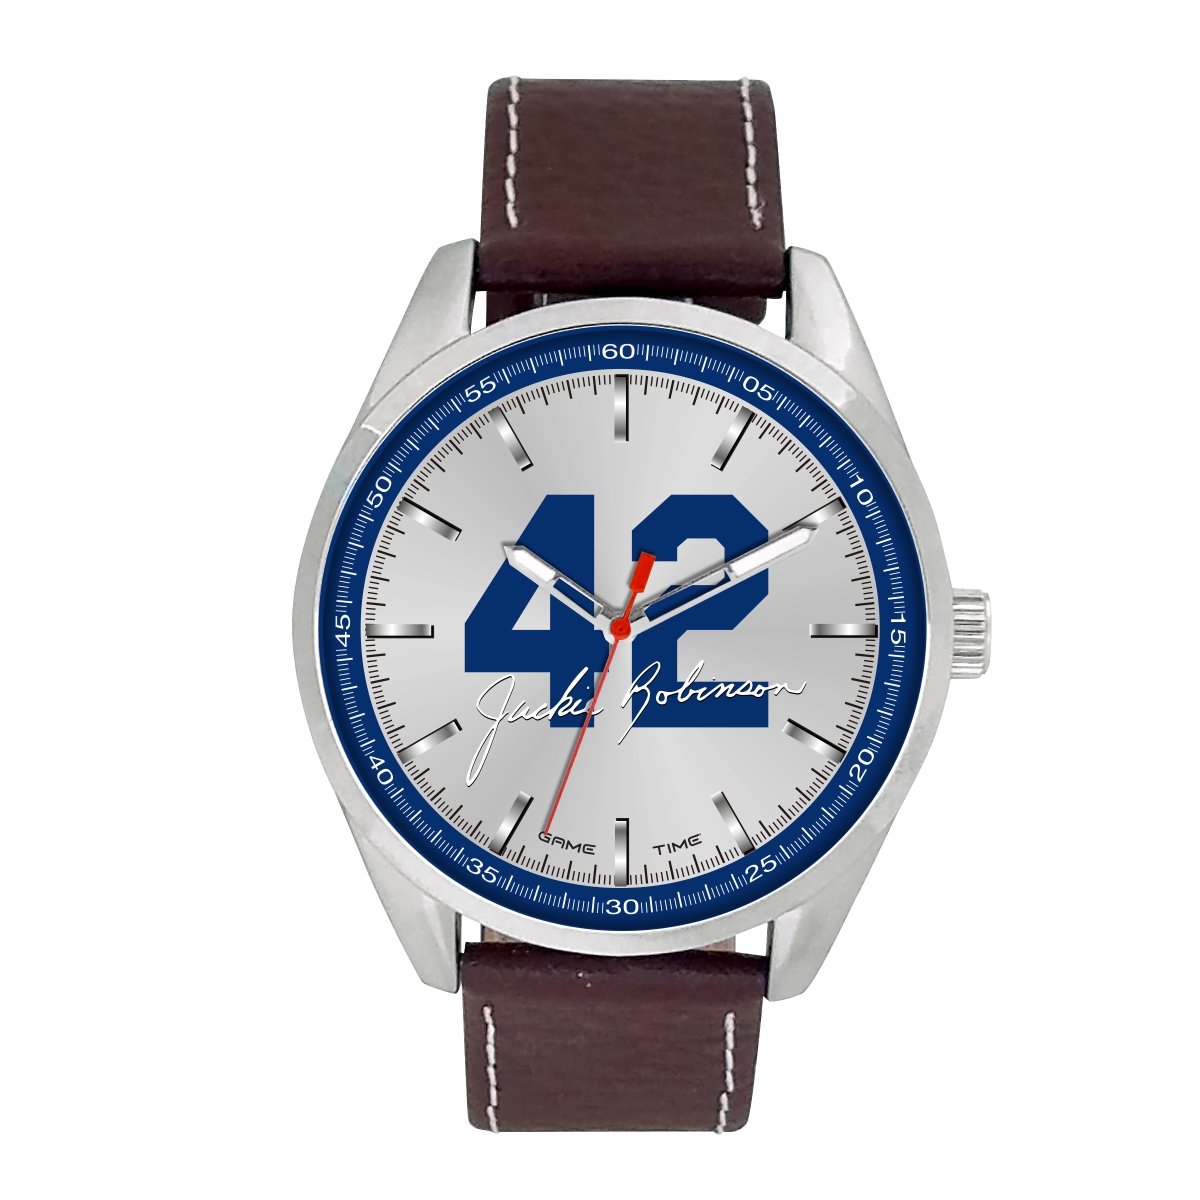 Gametime Jrf-pib Brown Series Jackie Robinson 42 Signature Pioneer Watch